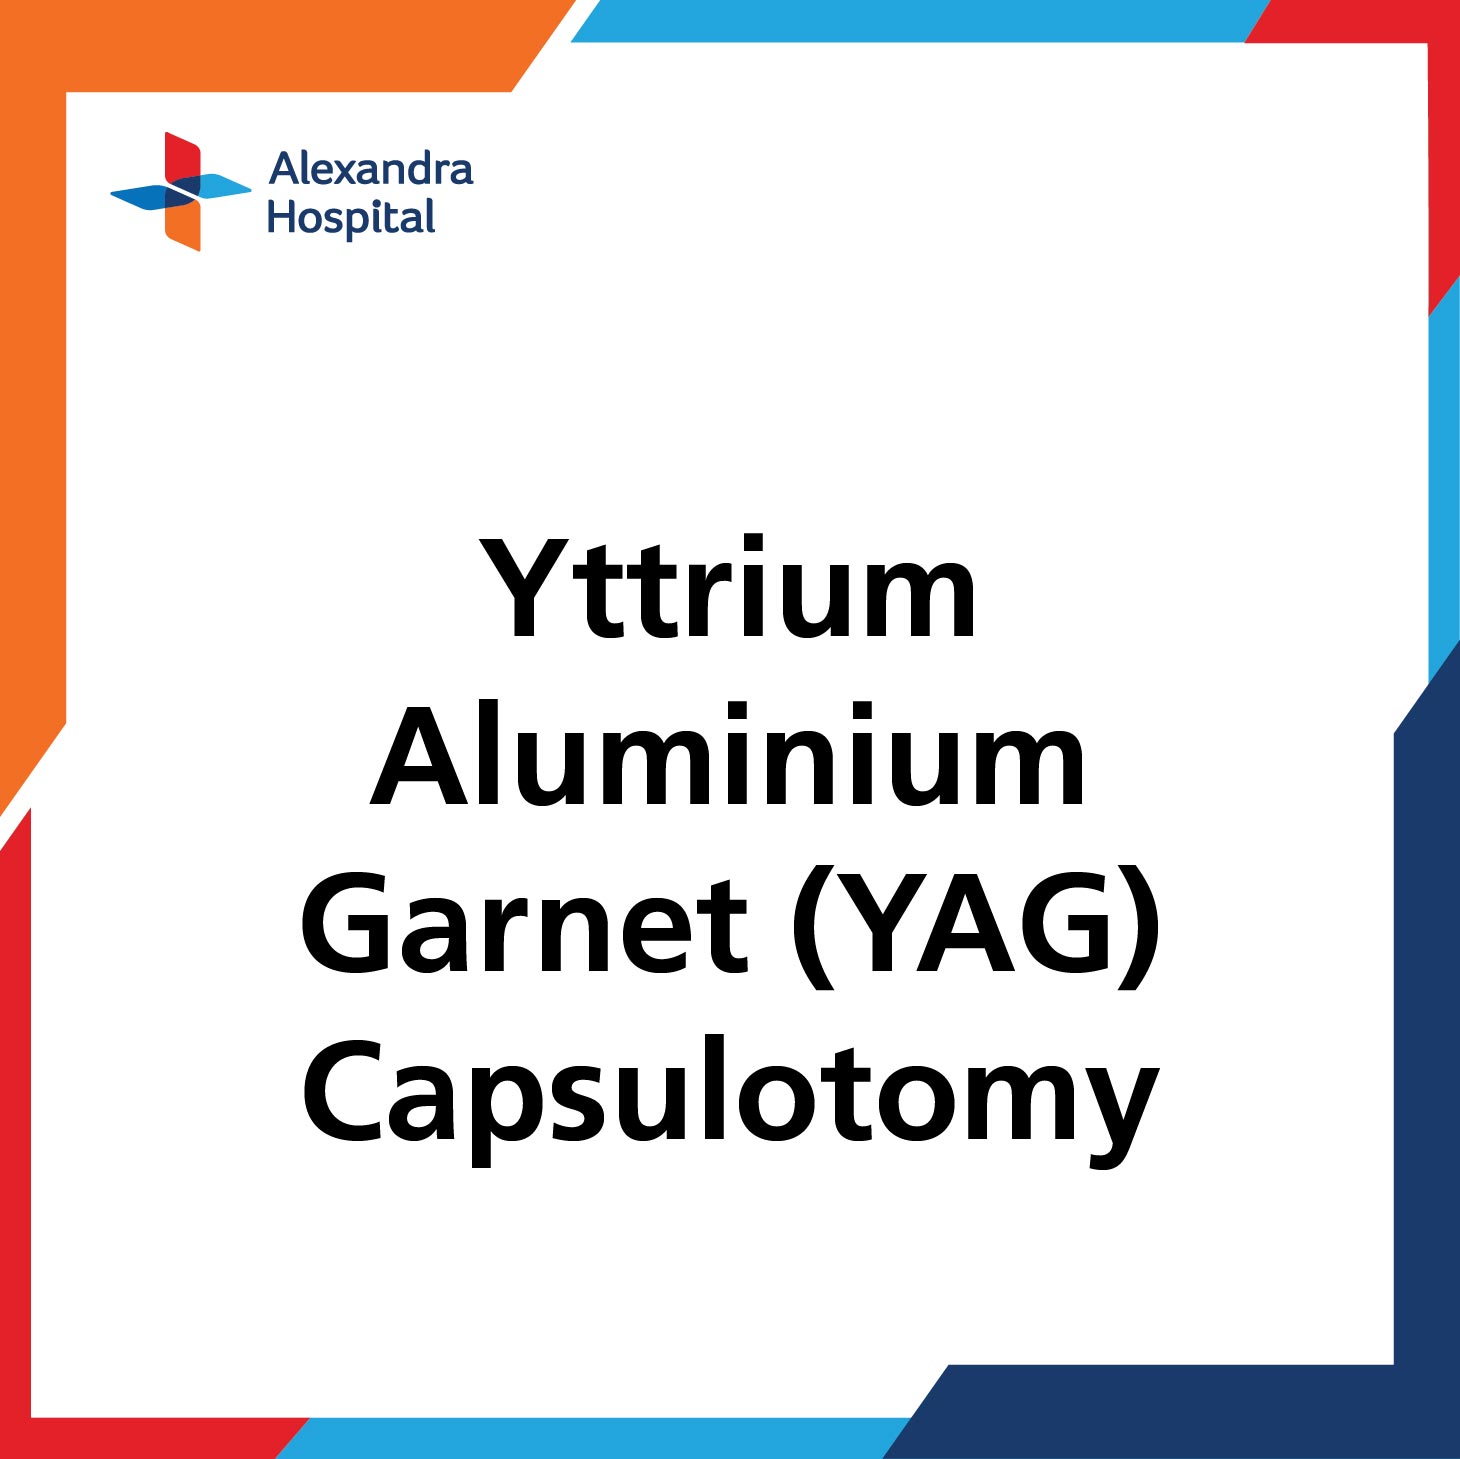 Yttrium Aluminium Garnet (YAG) Capsulotomy